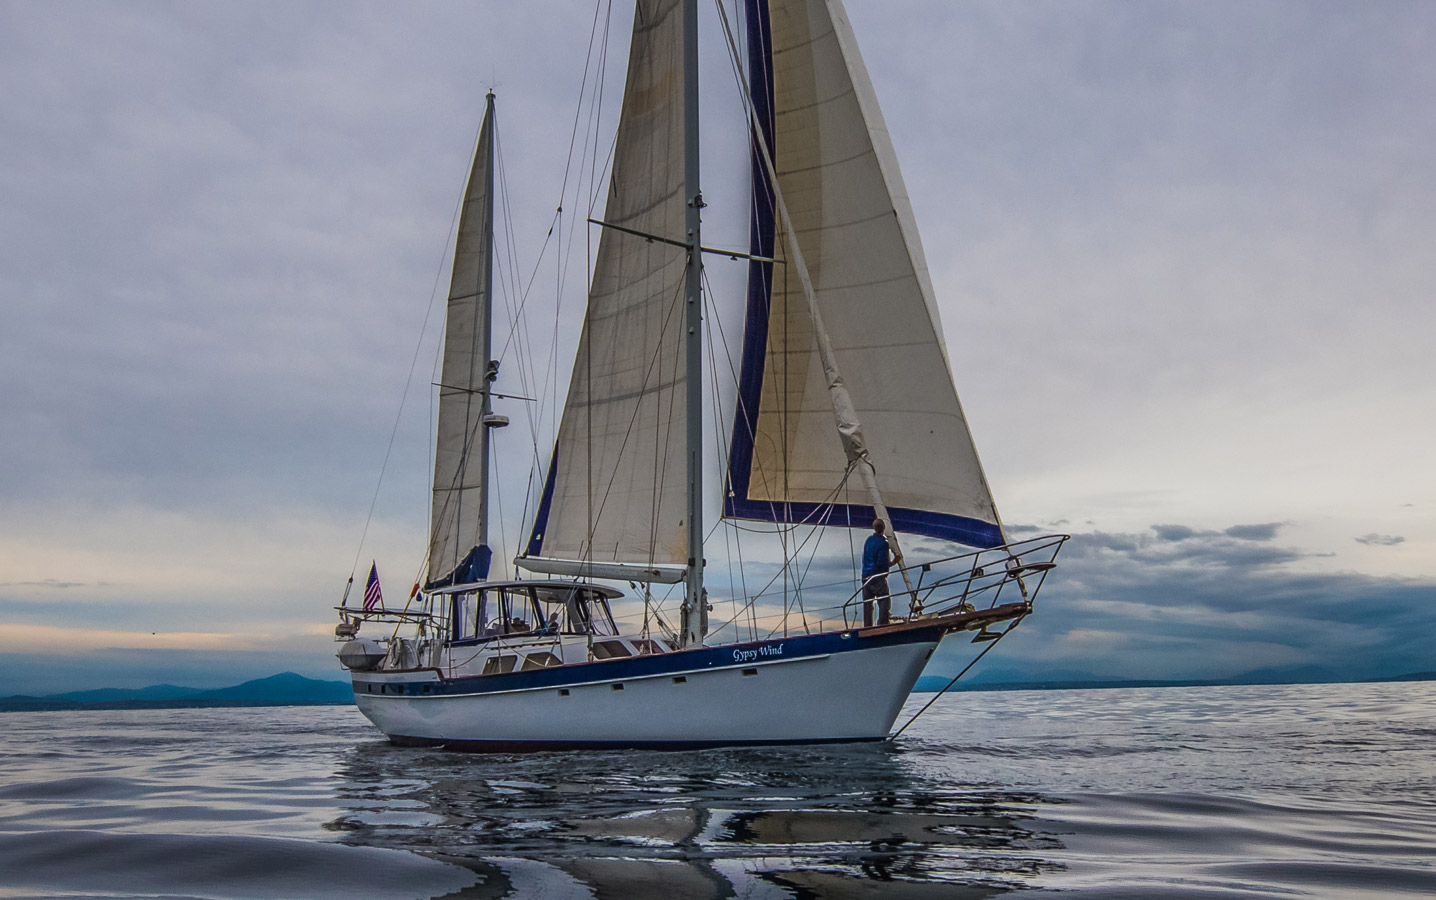 gypsy wind sailboat